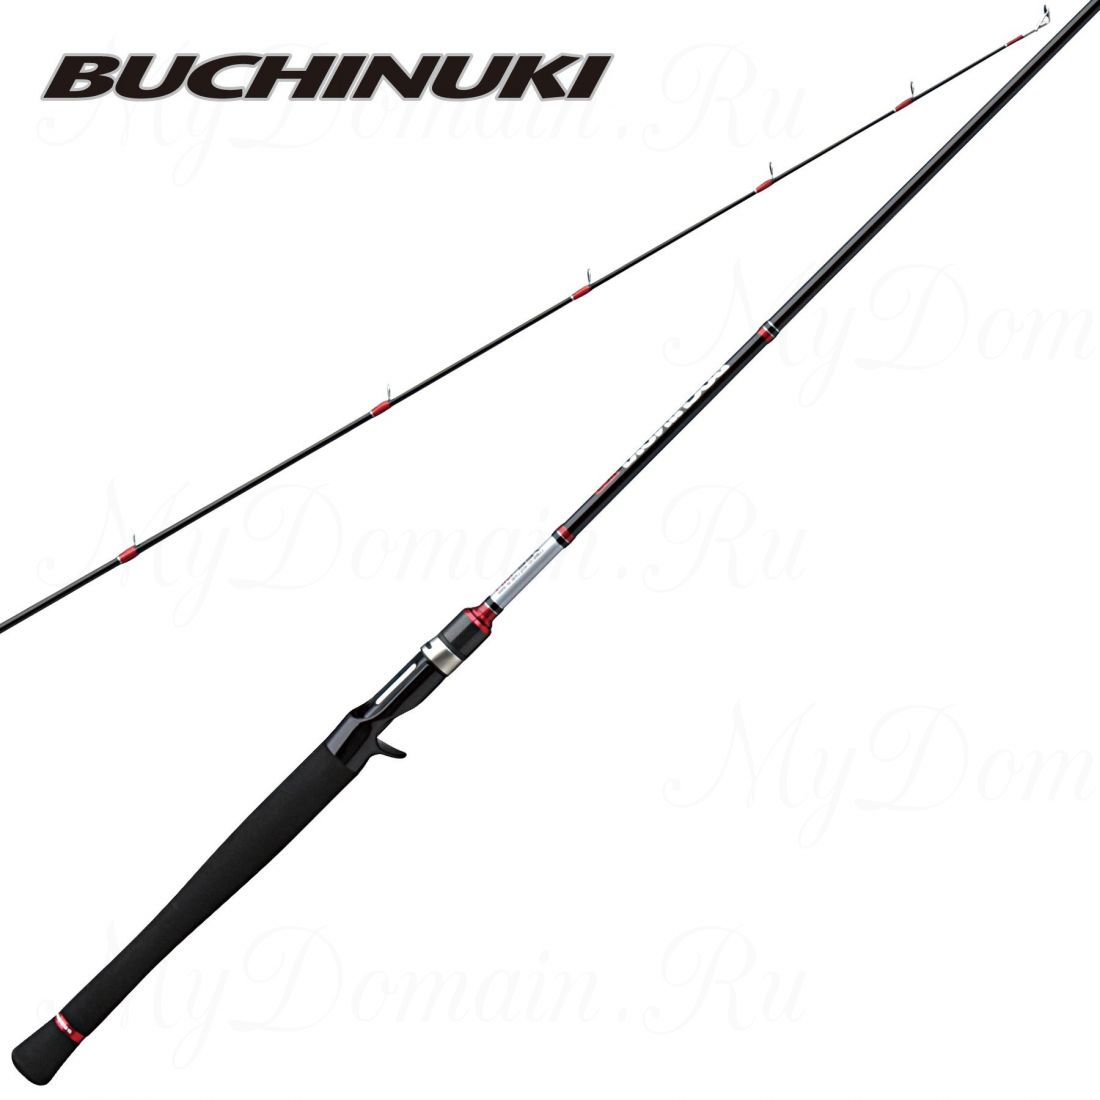 Удилище кастинговое Prox Buchinuki BC-X 662MH 200 cм, 2 секции, 10-40 гр, вес 143 гр, транспортная длина 104 см.